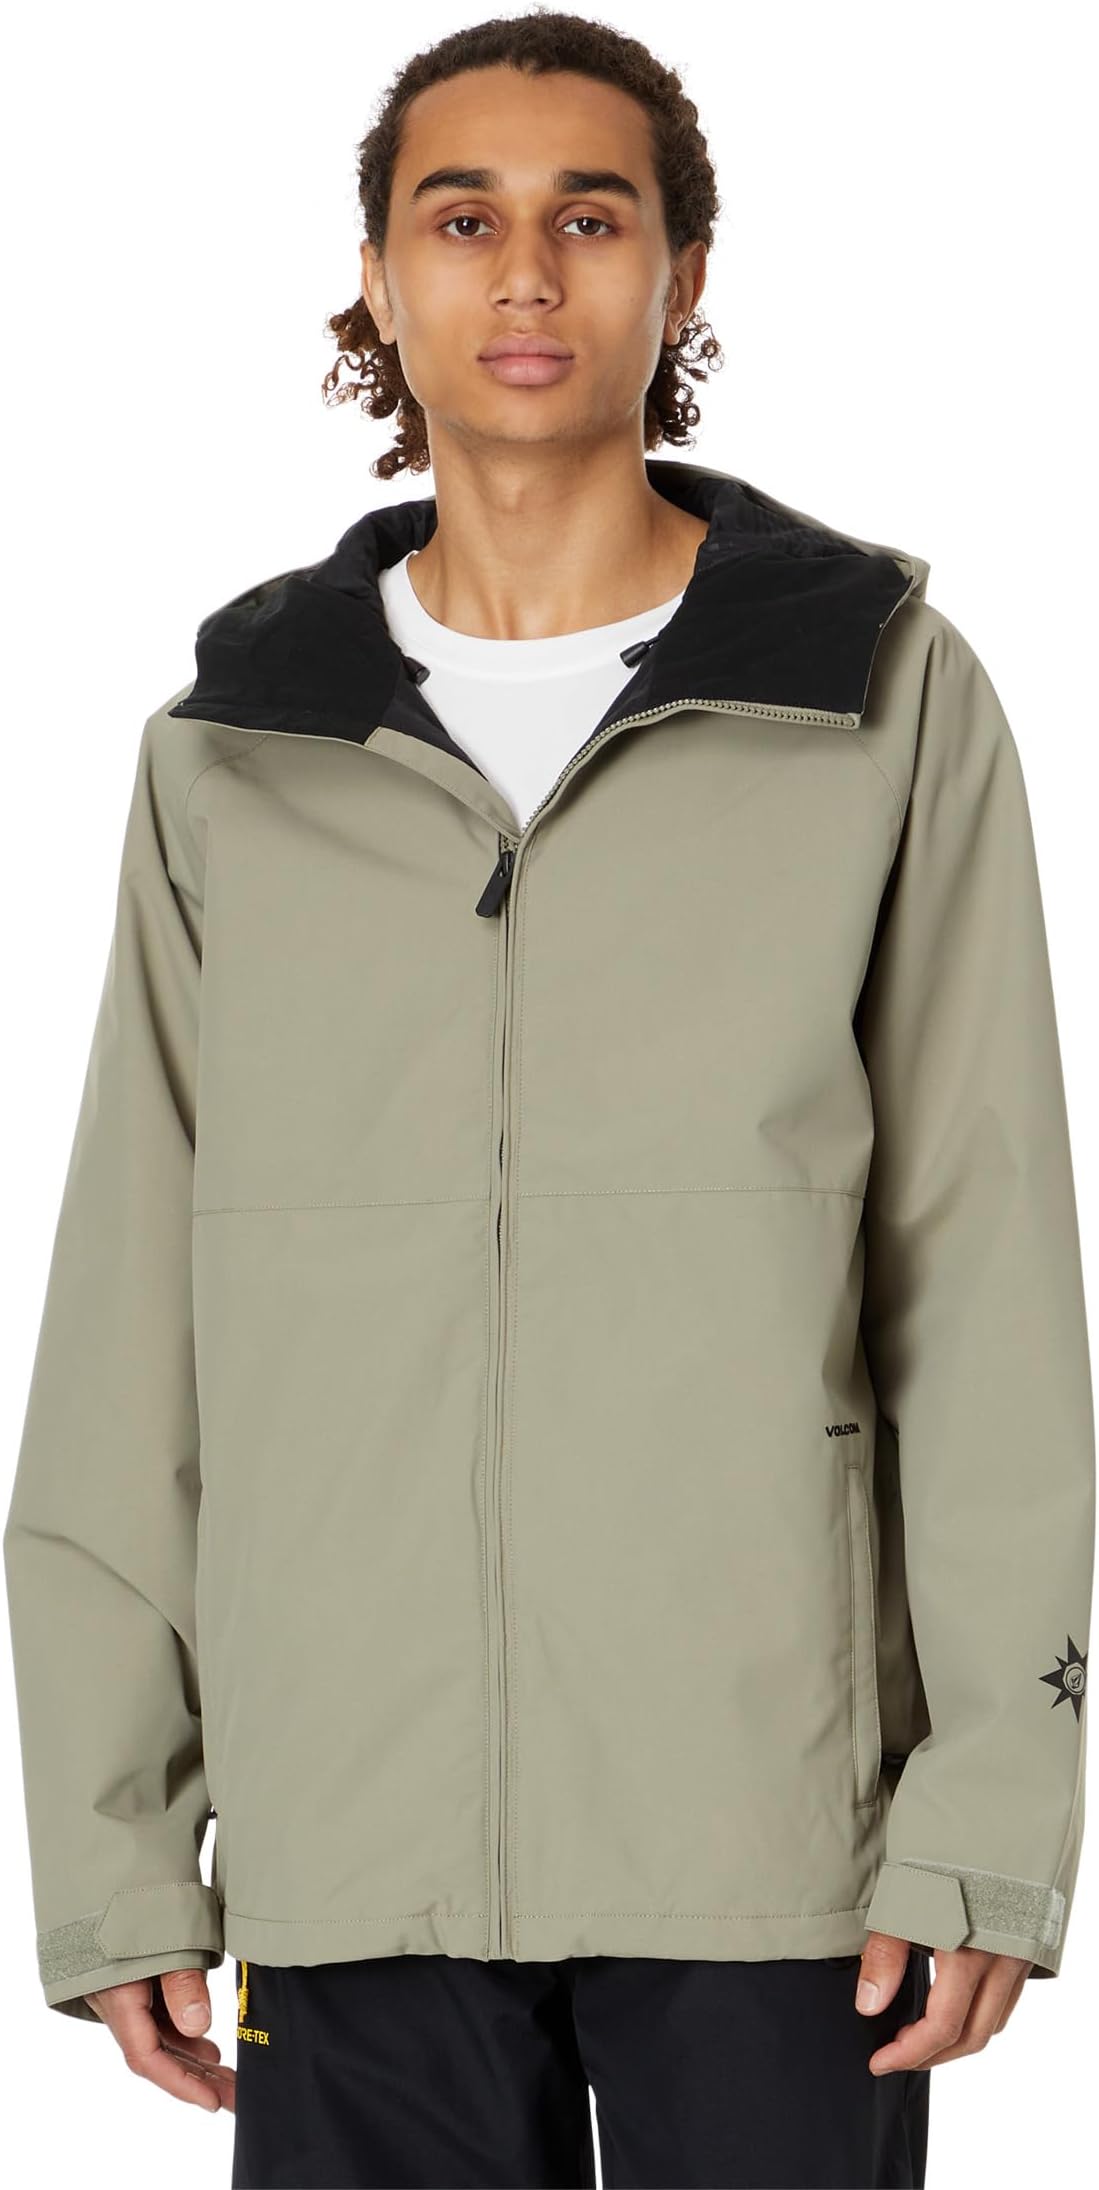 Куртка 2836 Insulated Jacket Volcom Snow, цвет Light Military бейсболка circle dad volcom цвет light peony